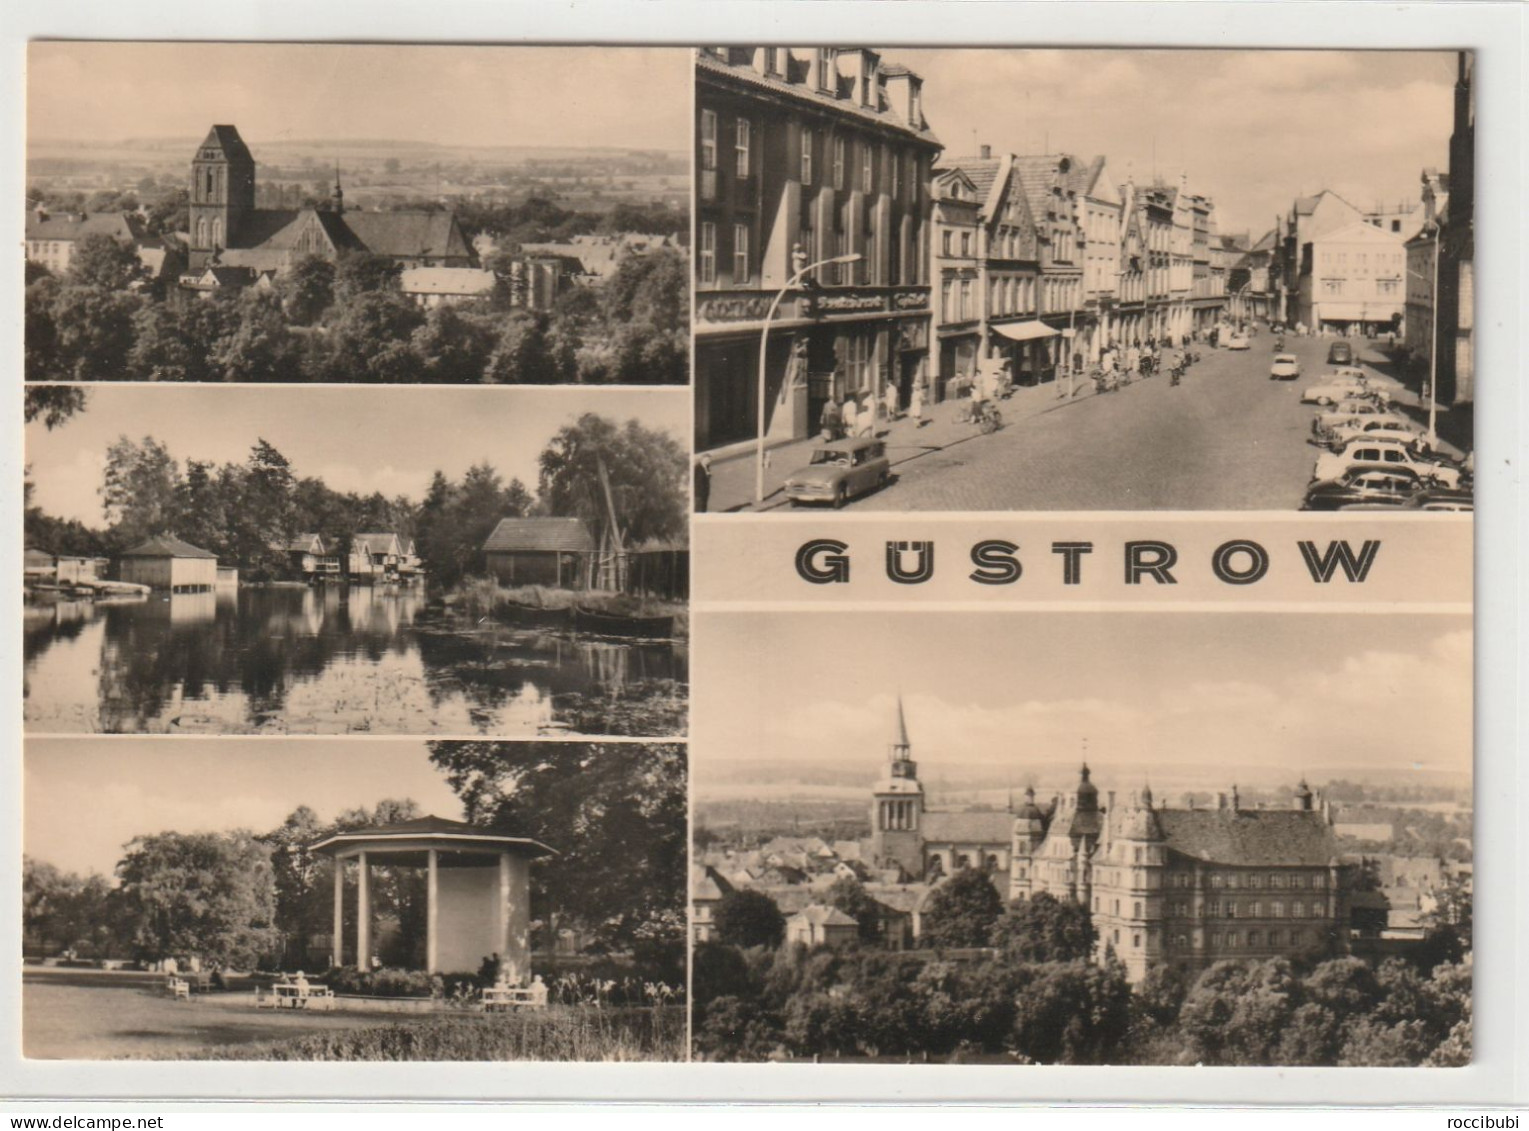 Güstrow, Mecklenburg-Vorpommern - Guestrow